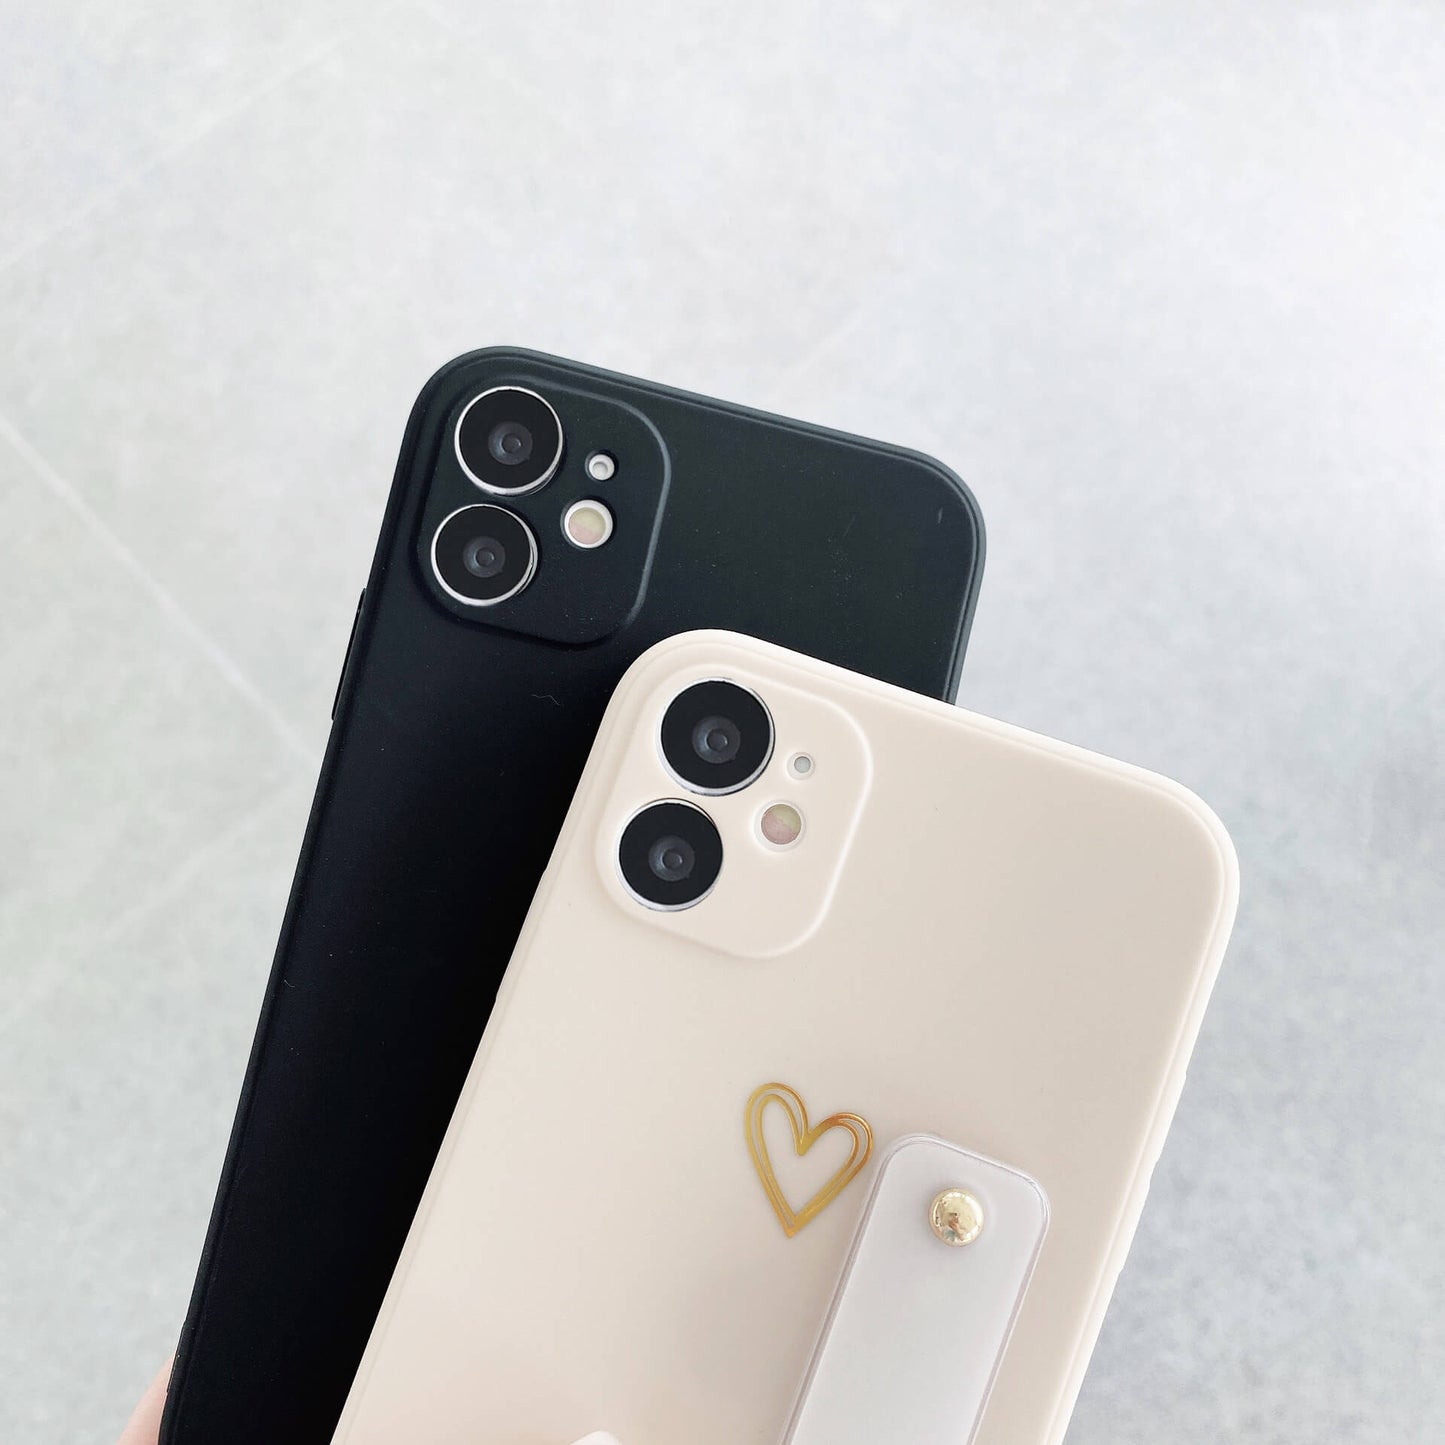 Couple de couleur unie Brozing Love Heart Wrisband Coque et skin adhésive iPhone